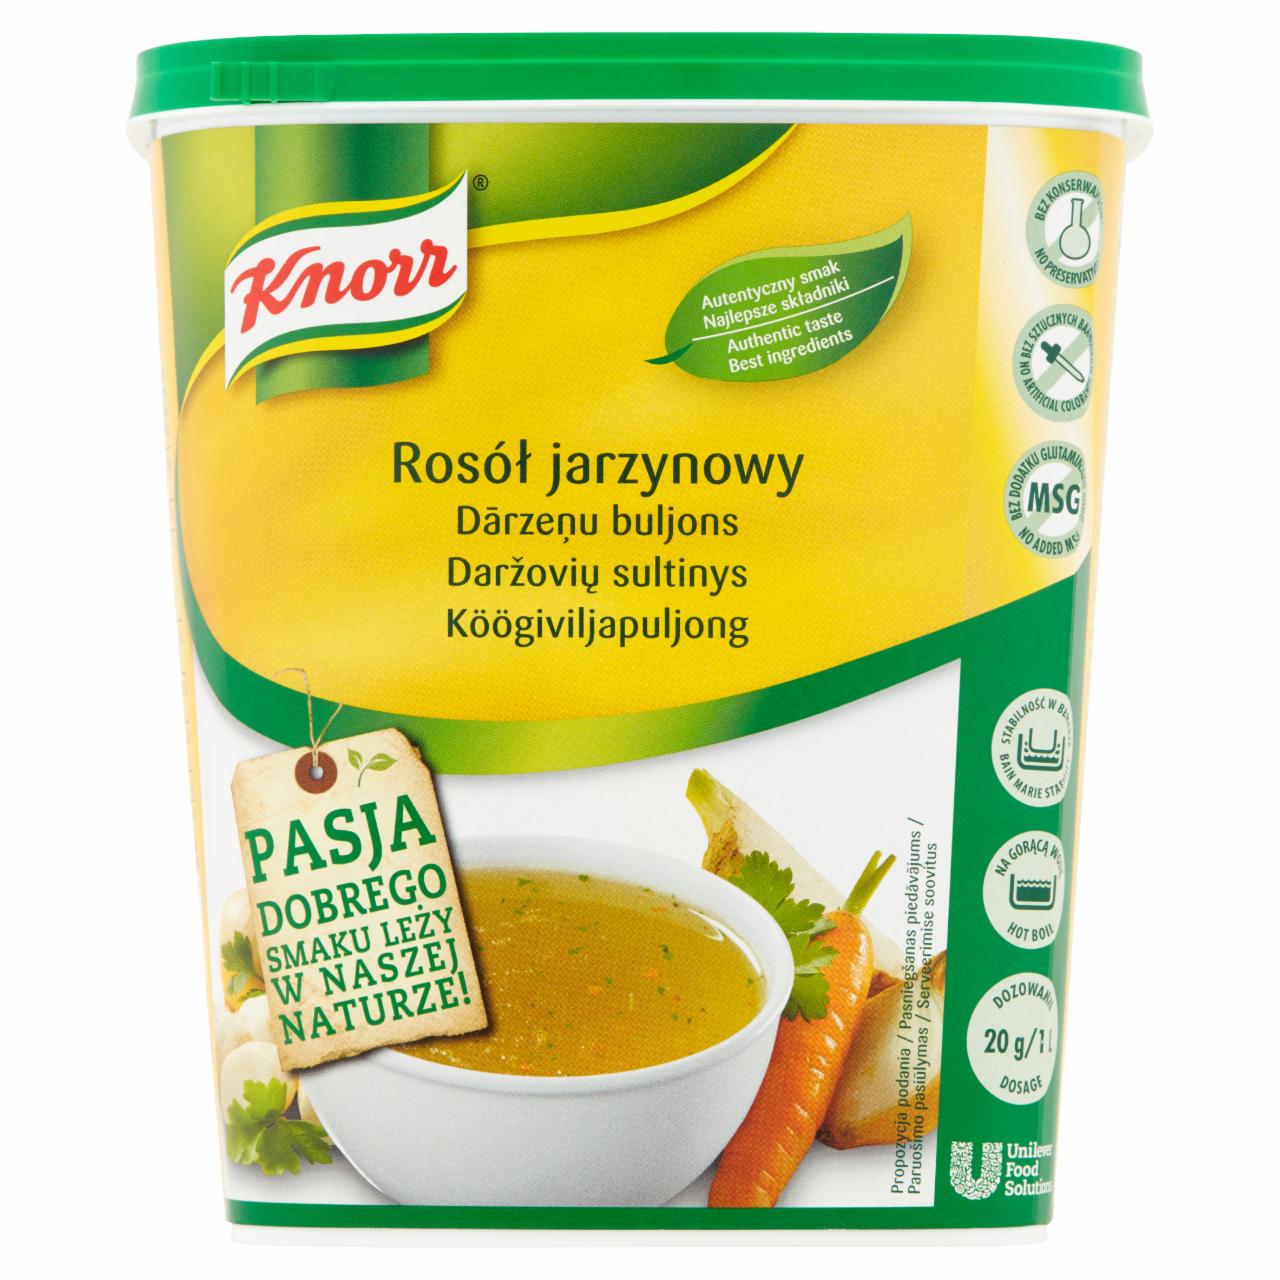 Zdjęcia - Knorr Rosół jarzynowy 1 kg